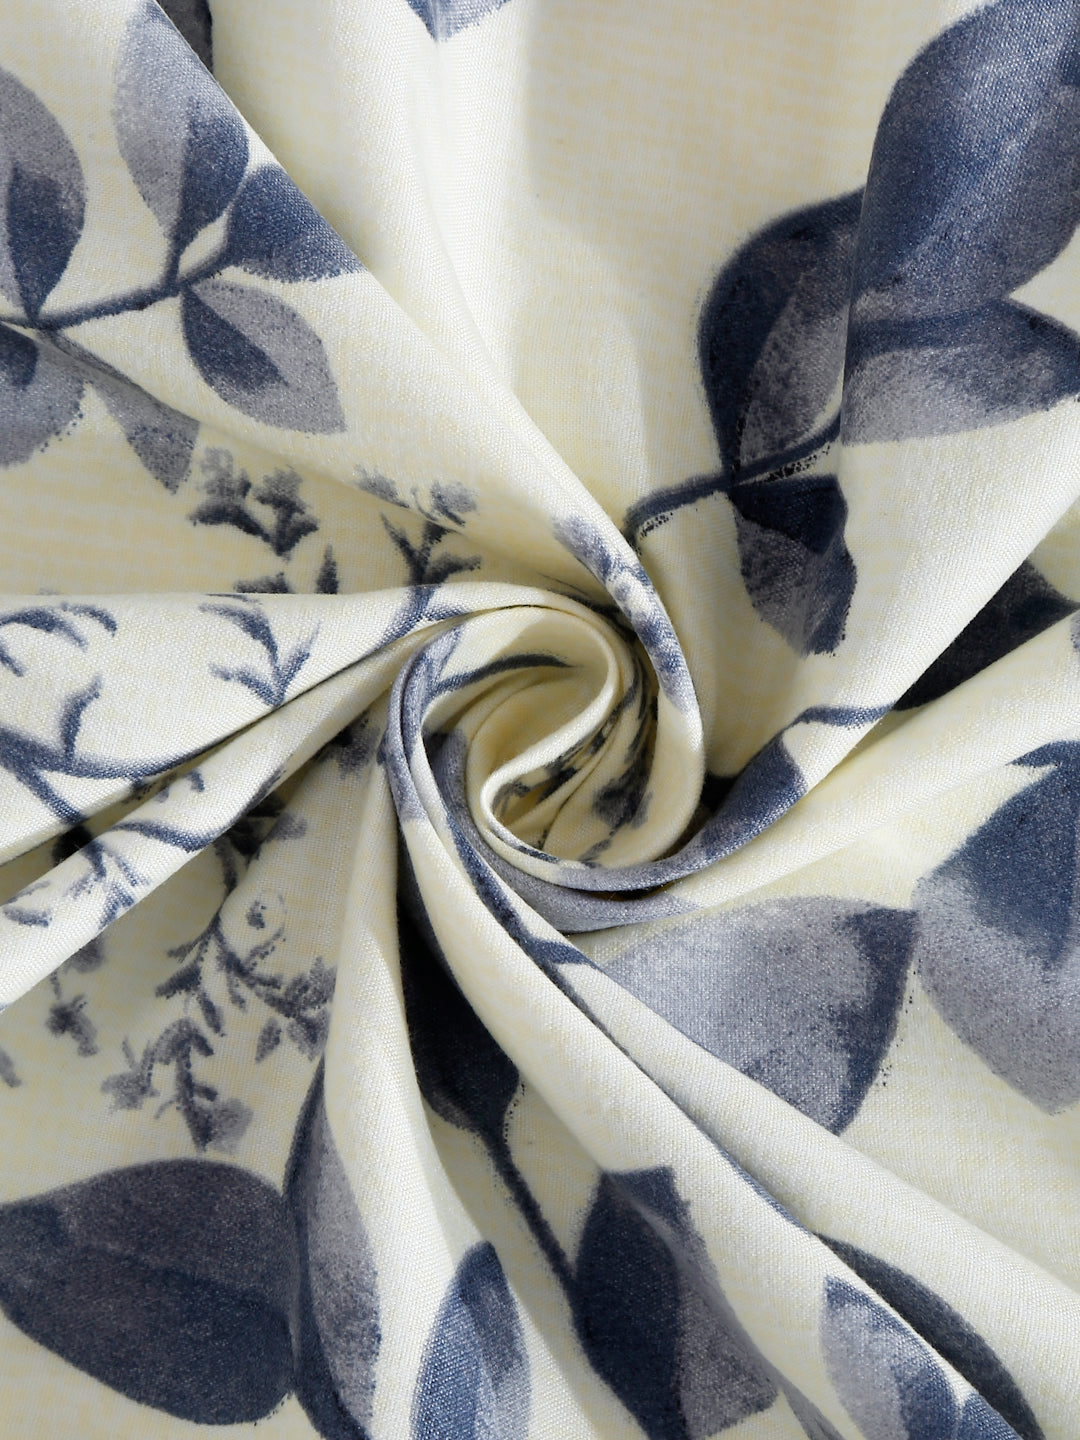 Arrabi Cream Leaf TC Cotton Blend Single Size Bedsheet with 1 Pillow Cover (215 x 150 cm)